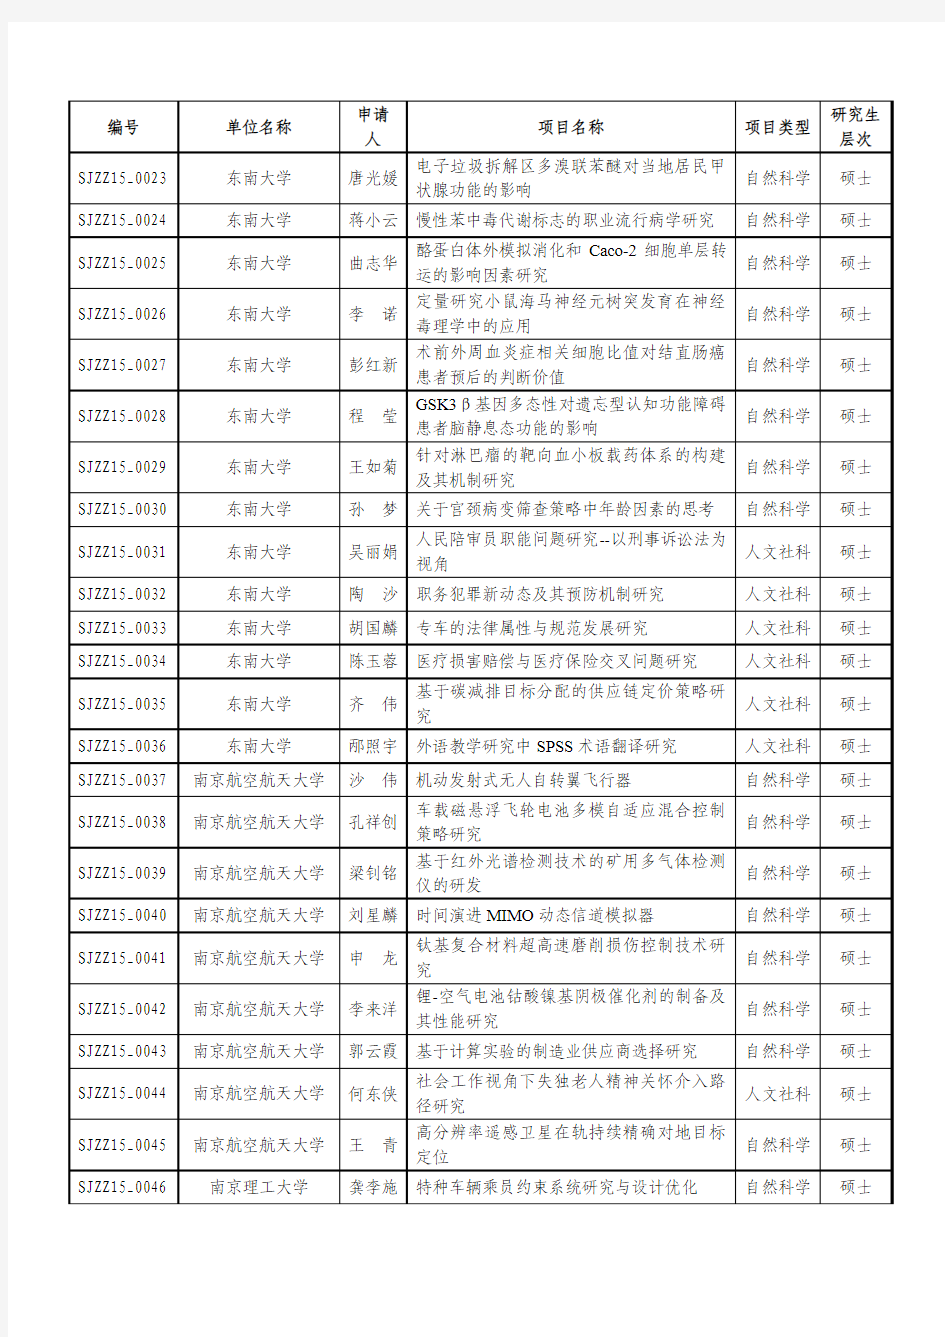 江苏省2015年度普通高校研究生实践创新计划项目名单(省助)(200项)